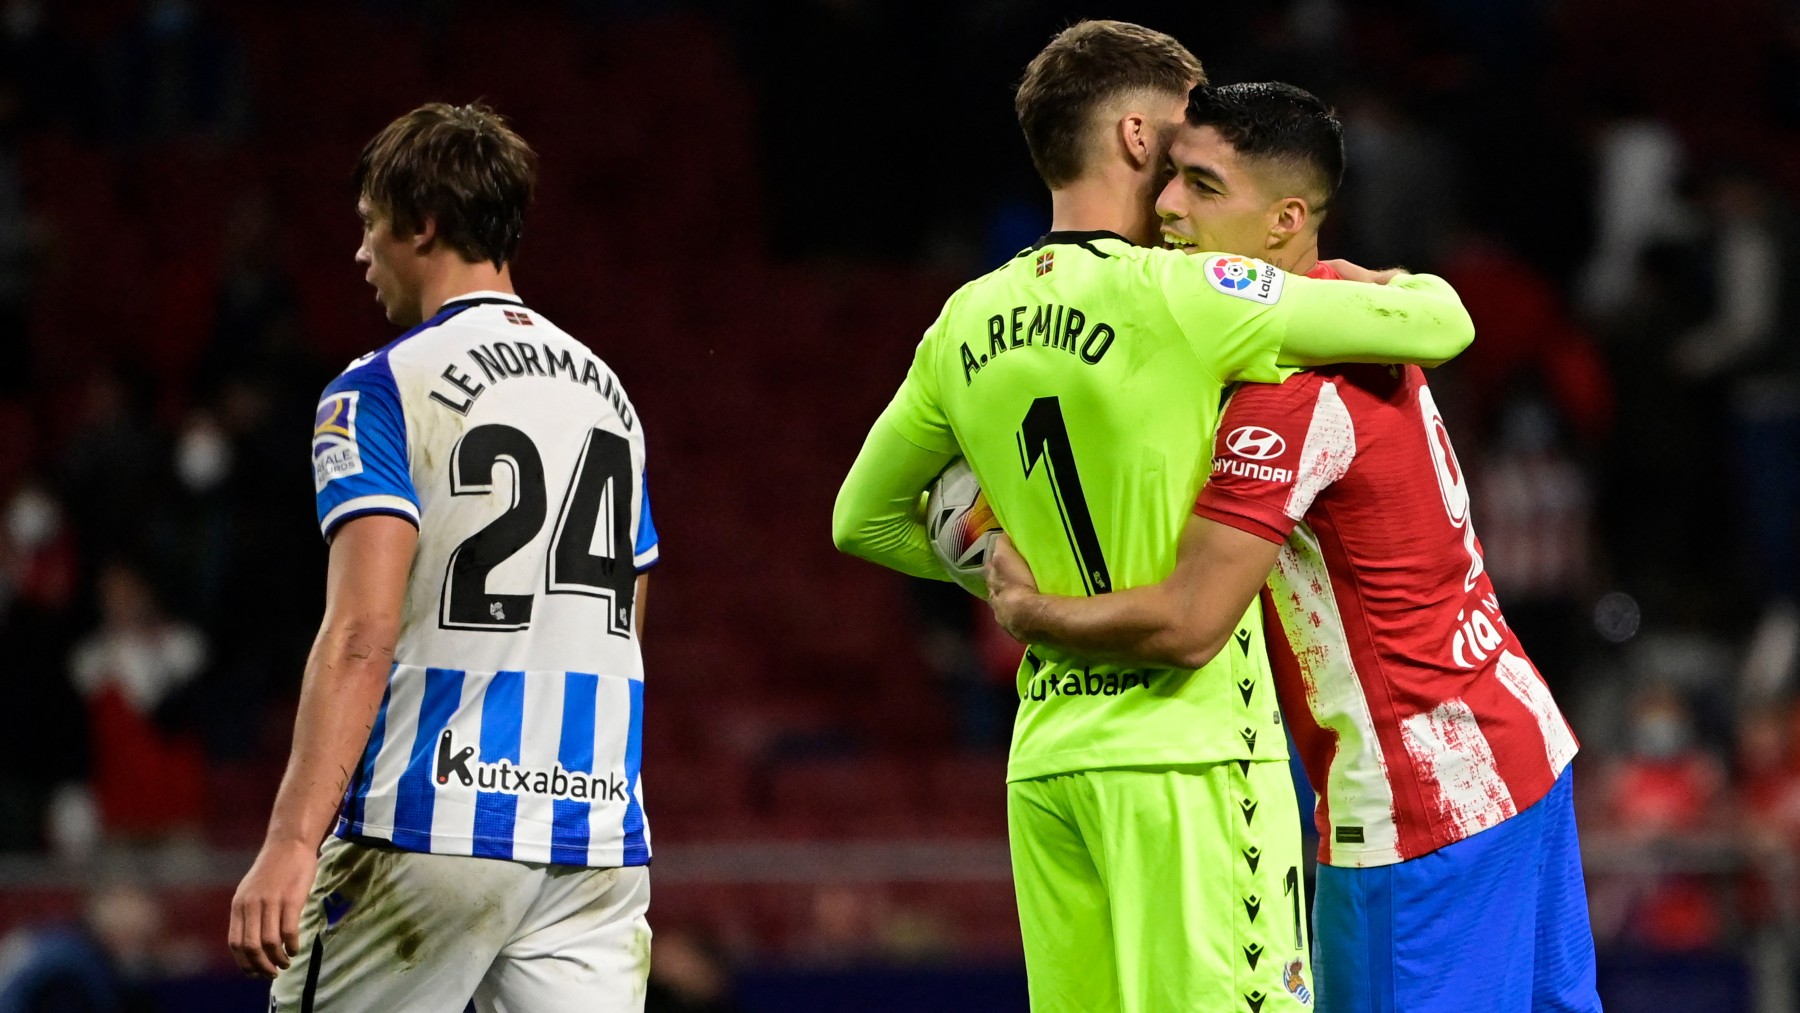 Remiro y Suárez se abrazan tras el partido. (AFP)